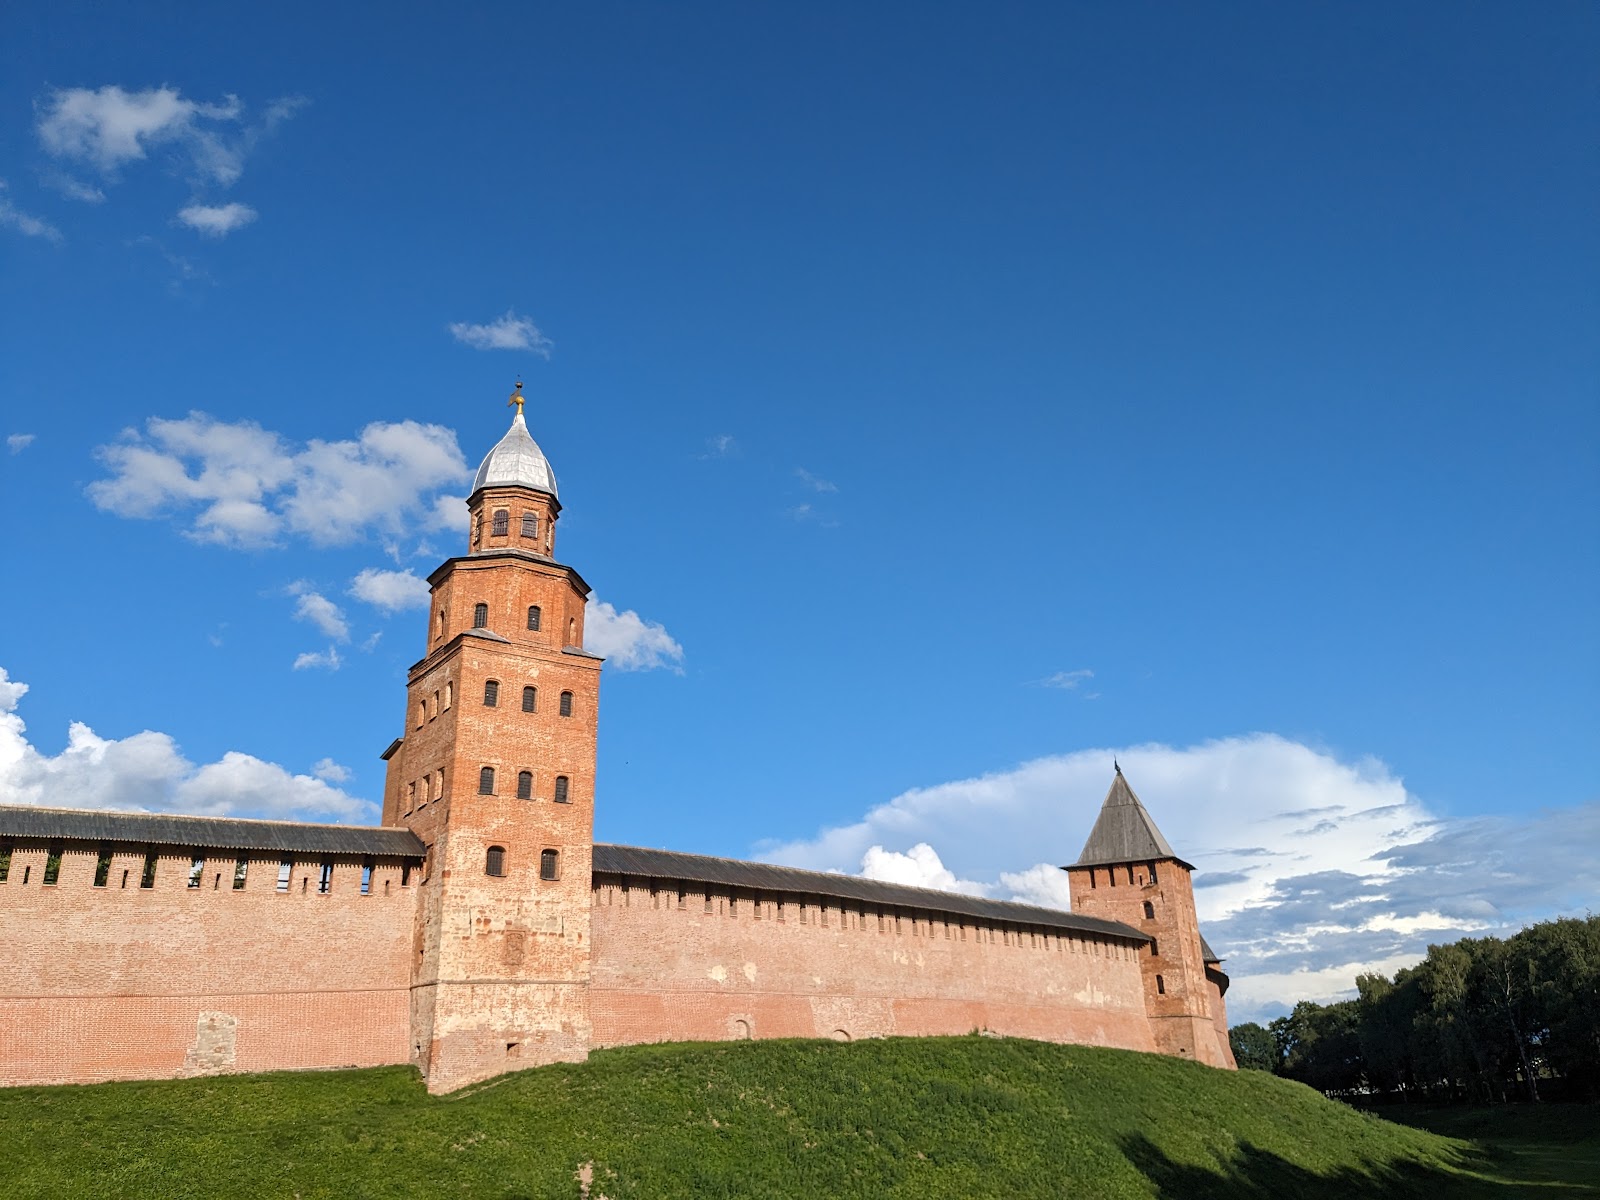 Novgorod Kremlin (Detinets)